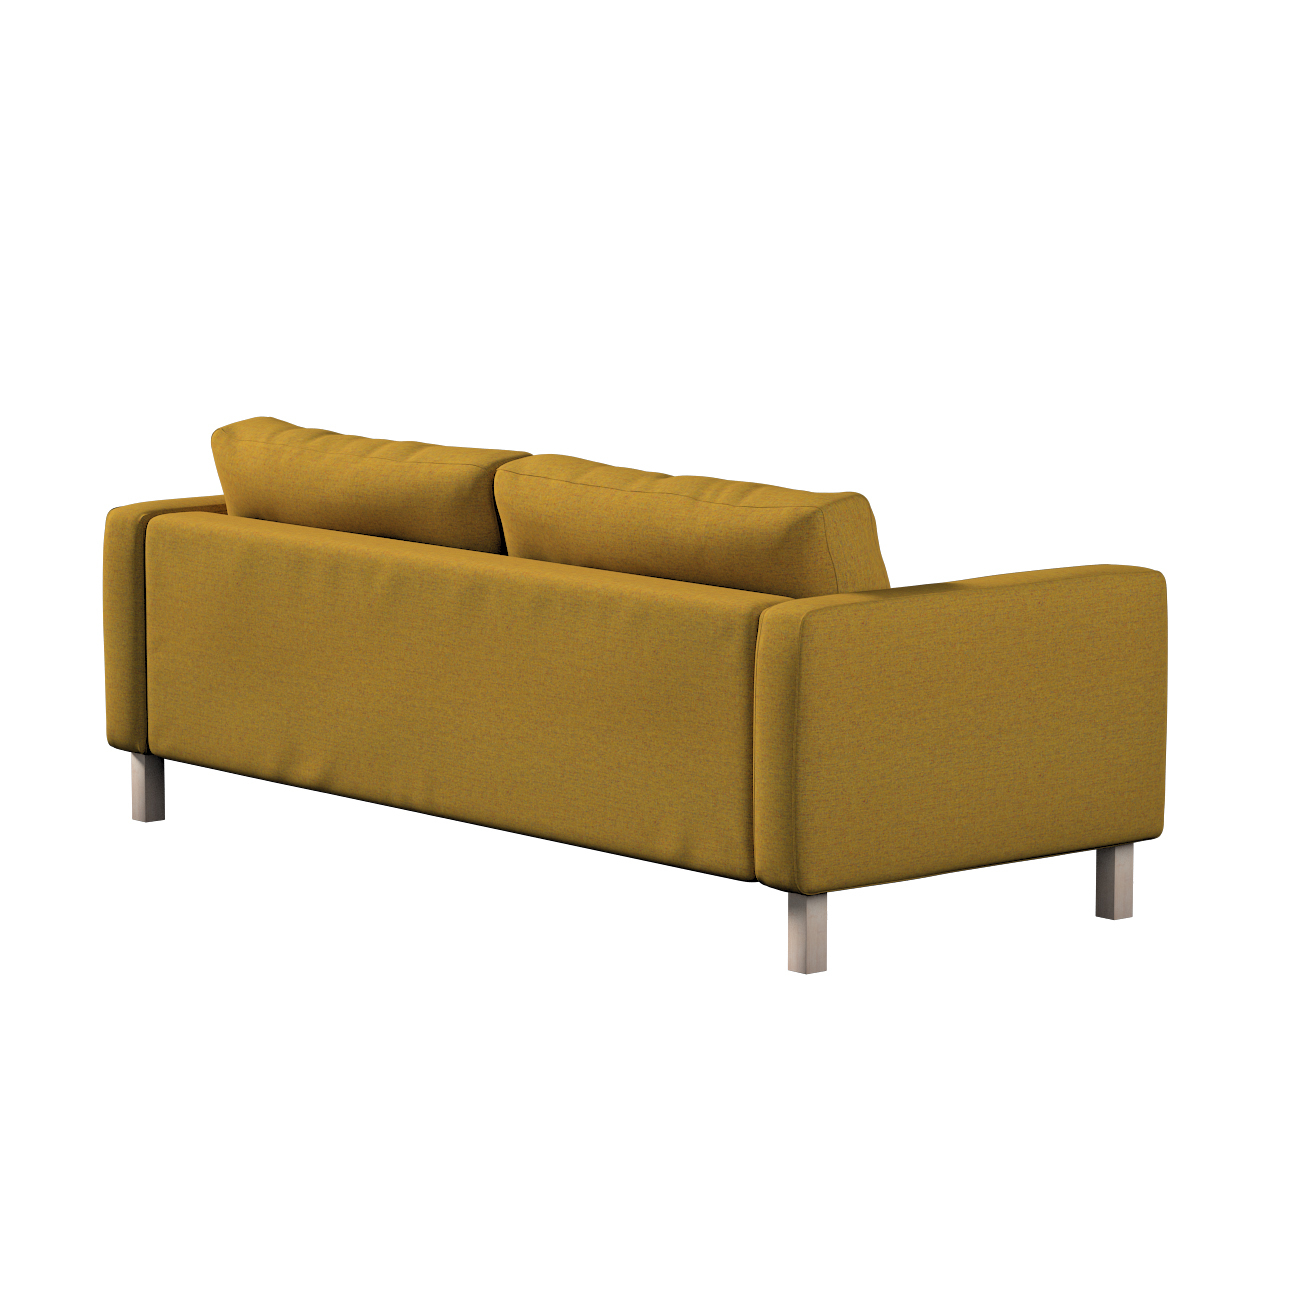 Bezug für Karlstad 3-Sitzer Sofa nicht ausklappbar, kurz, gelb, Bezug für K günstig online kaufen